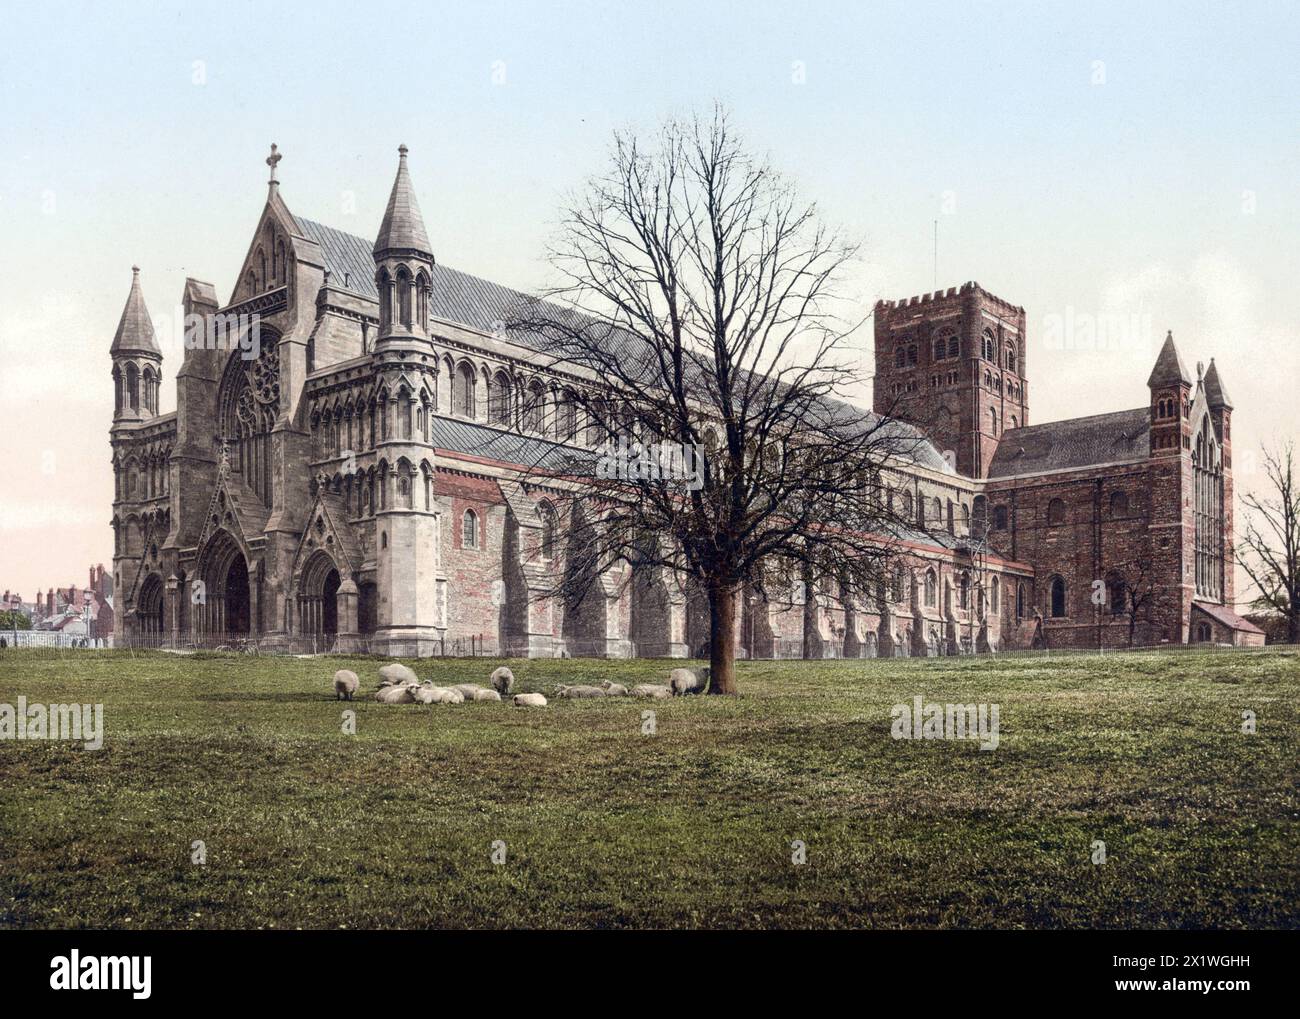 Abtei von St Albans mit ihrer Kirche, la cathédrale de St Albans in der Stadt St Albans im englischen Hertfordshire, Angleterre, um 1890, Historis Banque D'Images